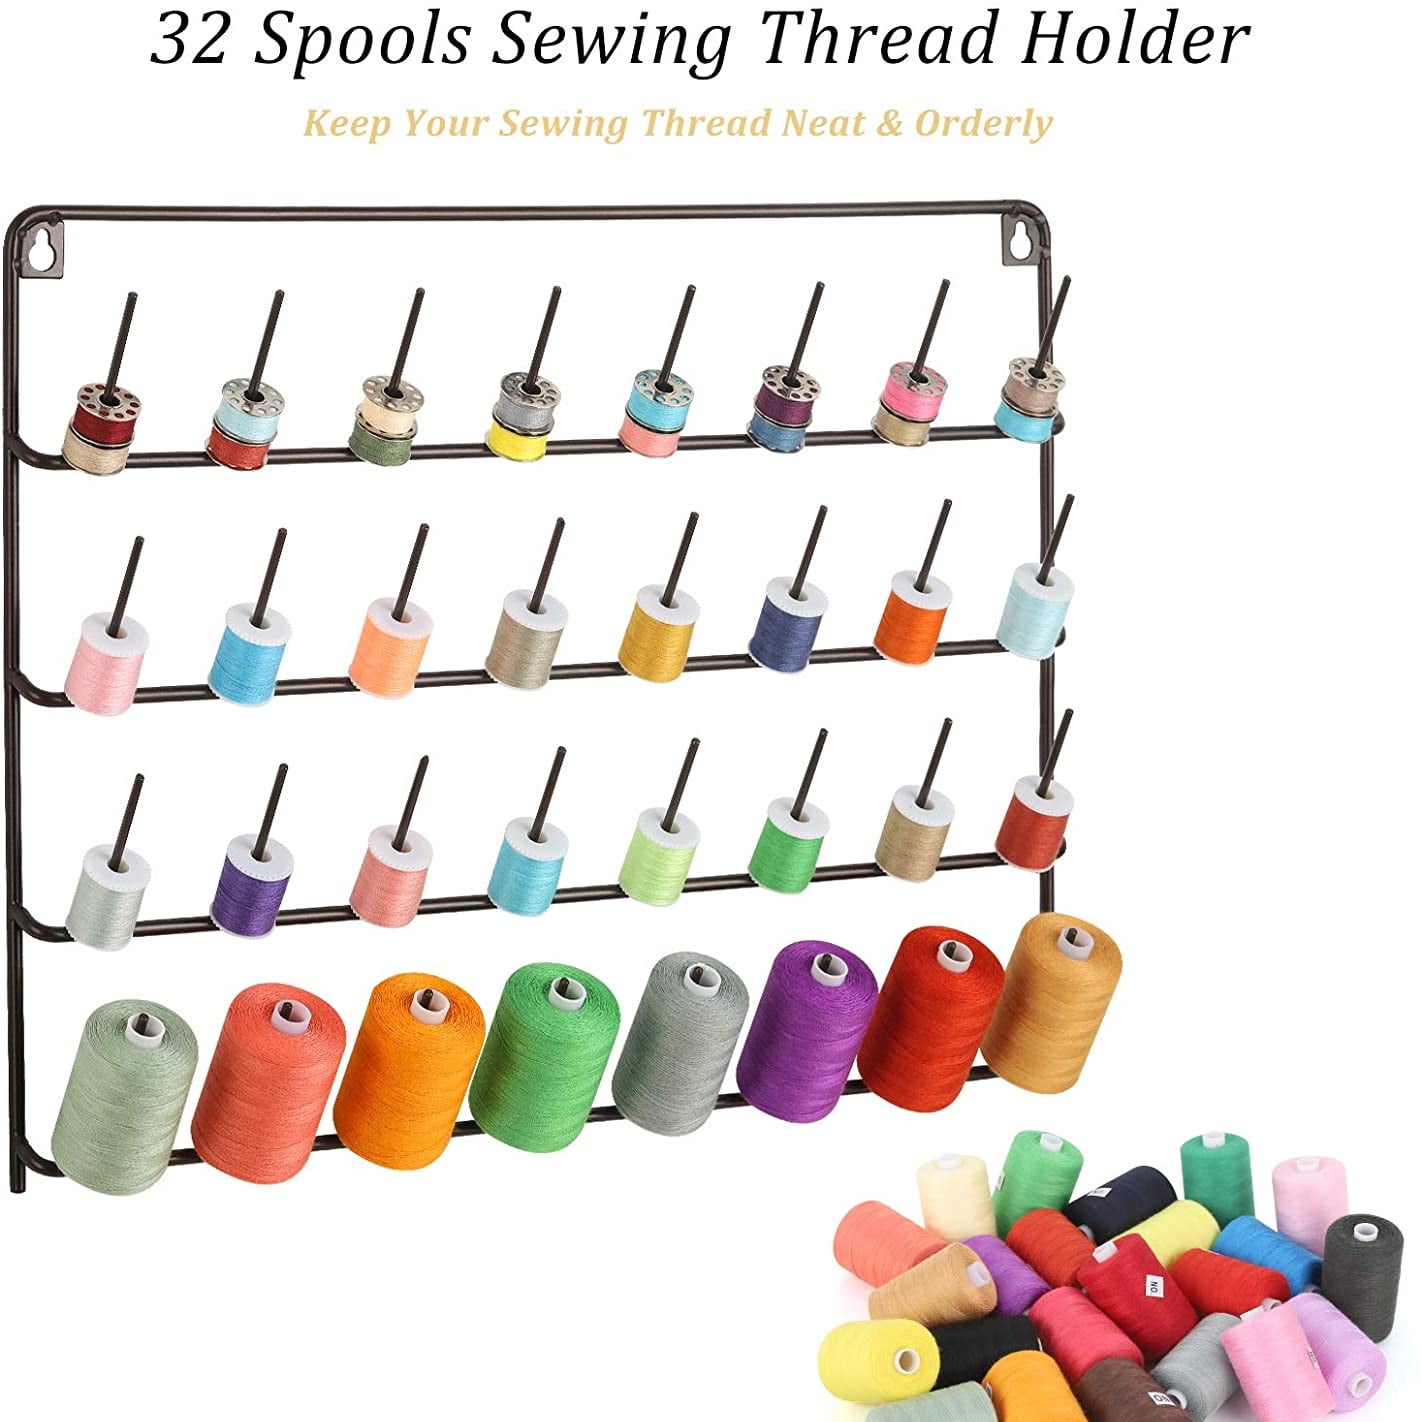 Thread Holder Wall Mount 32 Spool Storage Organizer Display Sewing